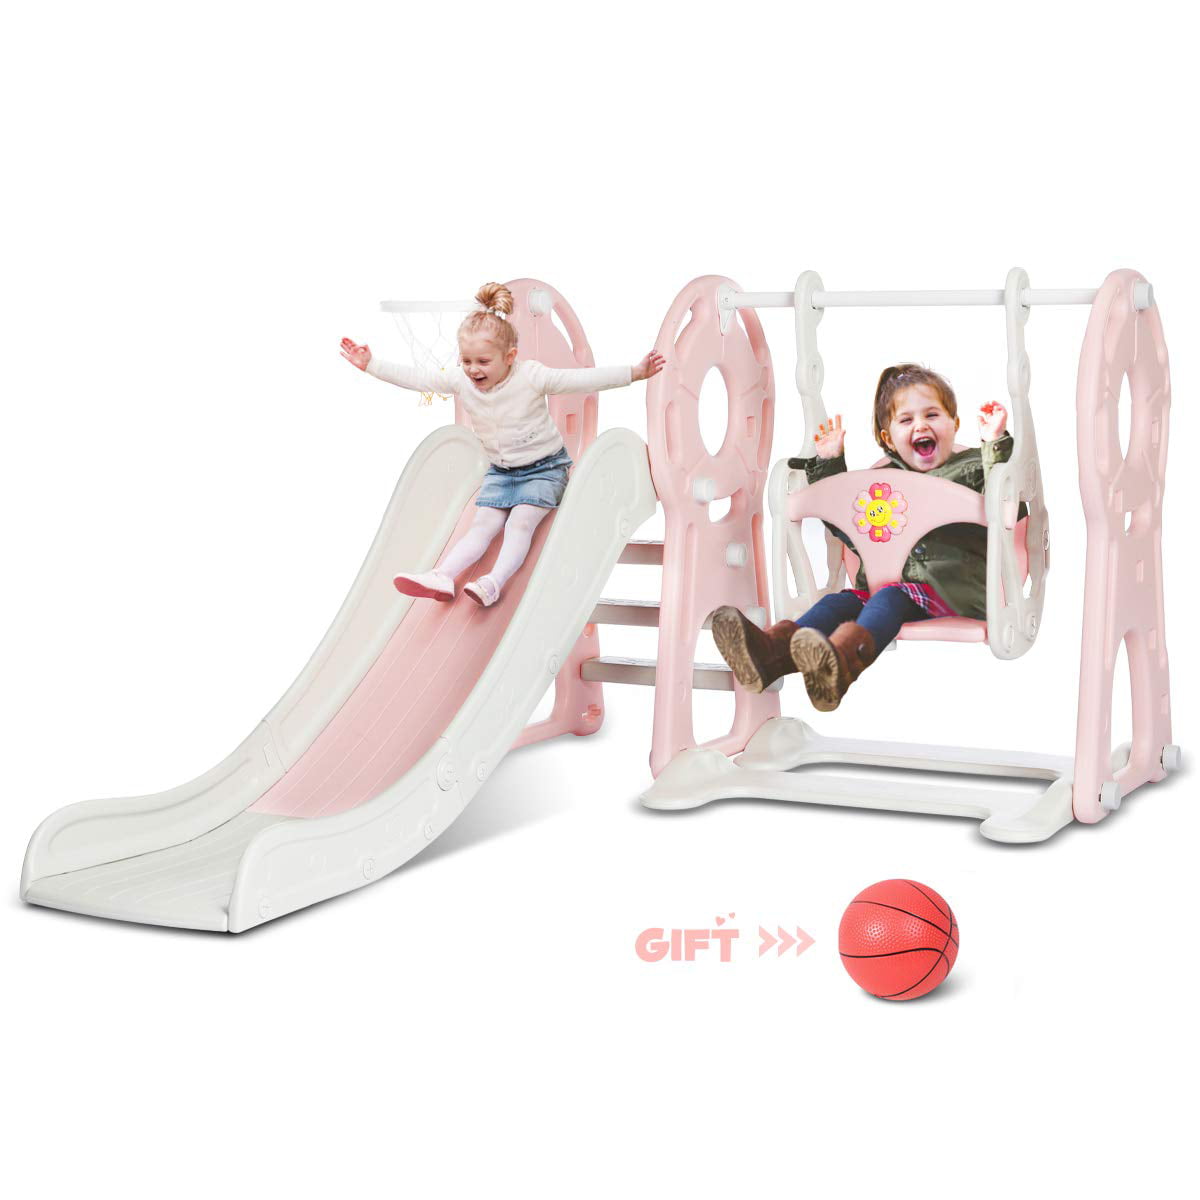 115 Swing Set For Backyard Playground Slide Fun Playset Outdoor Toddler Kid US C 